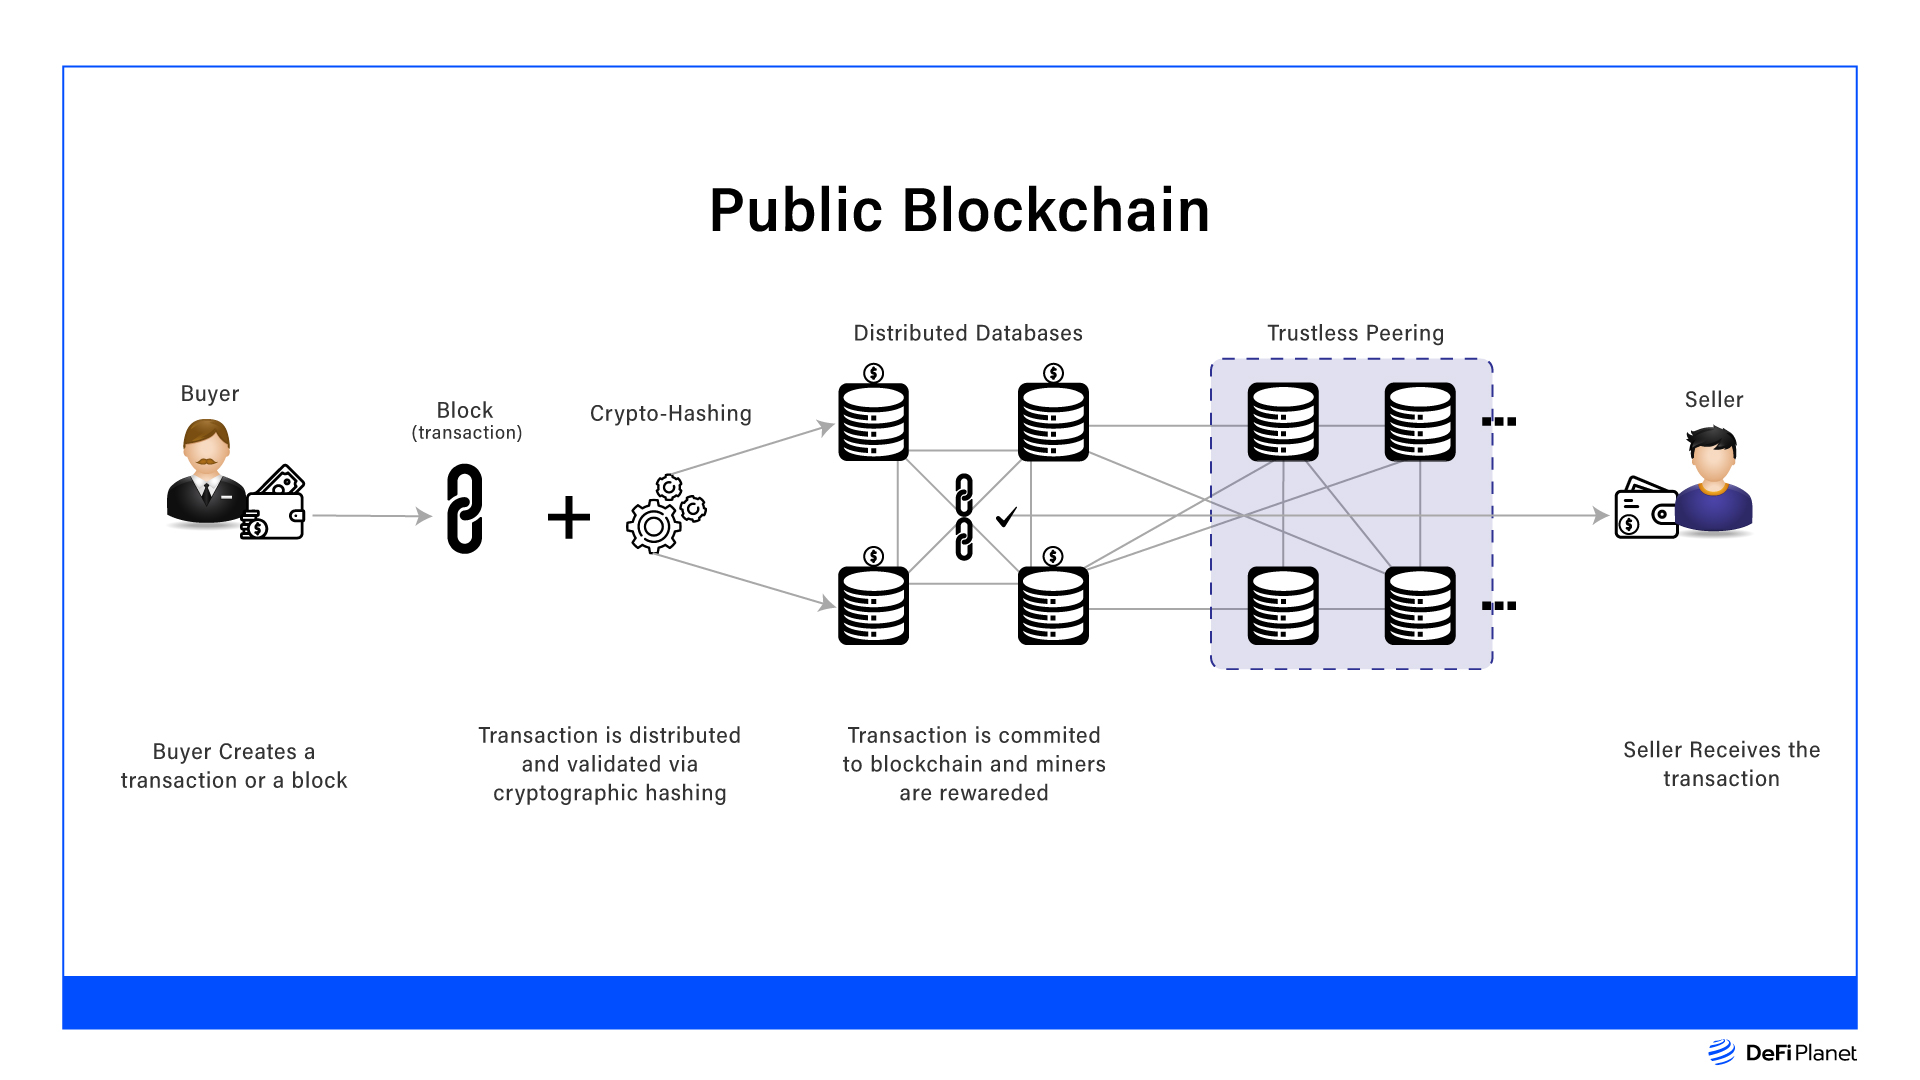 An image that explains how public blockchains work 